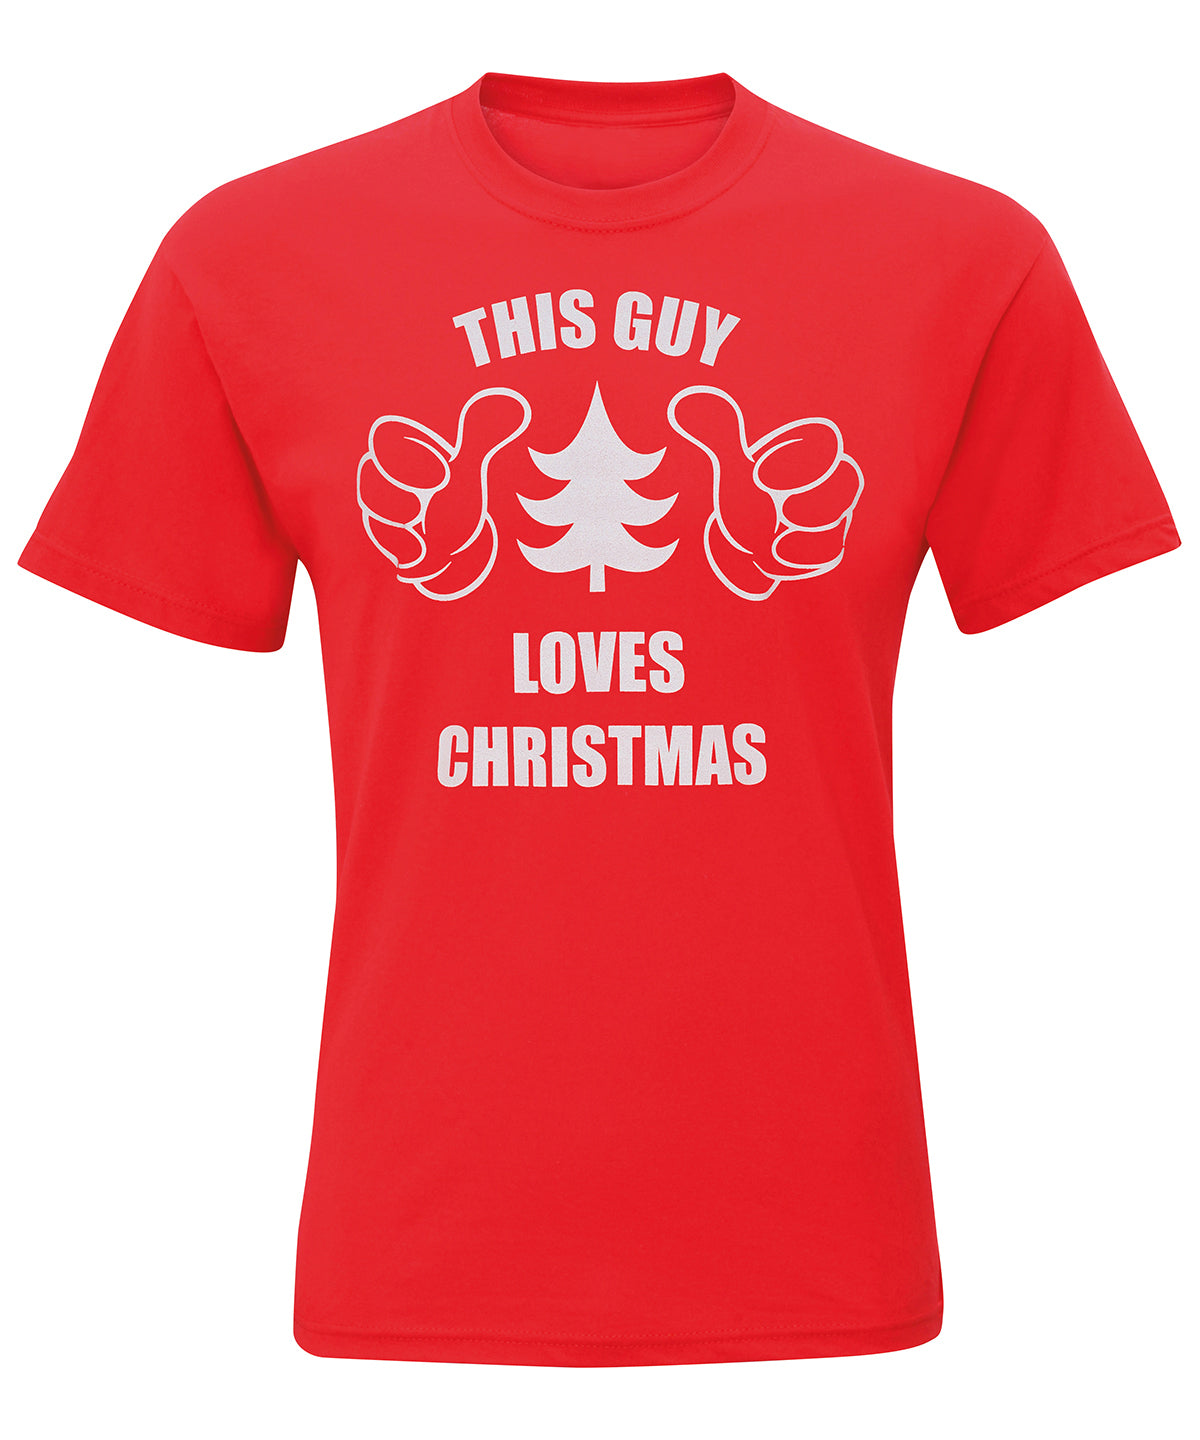 Stuttermabolir - Men's "This Guy Loves Christmas" Short Sleeve Tee